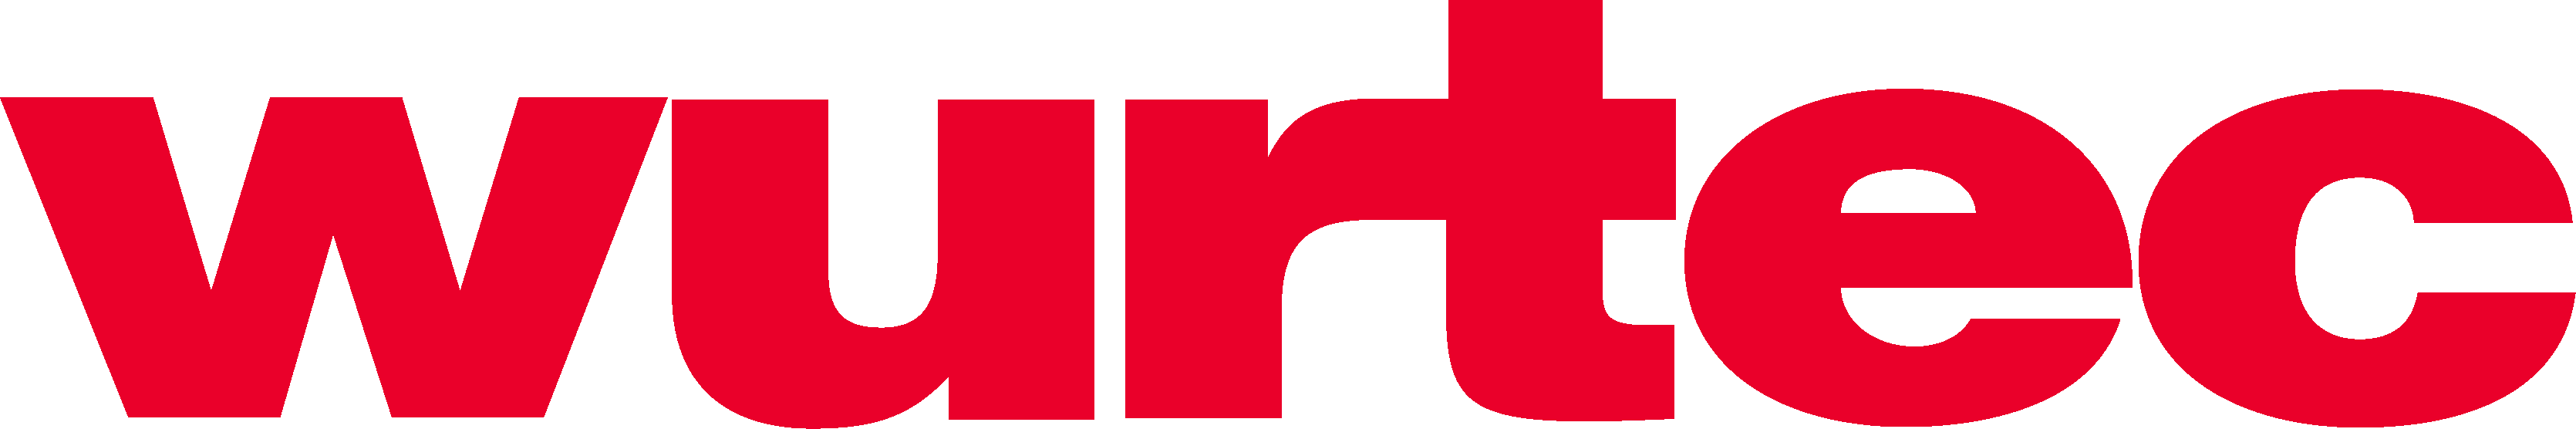 Wurtec, Inc. logo